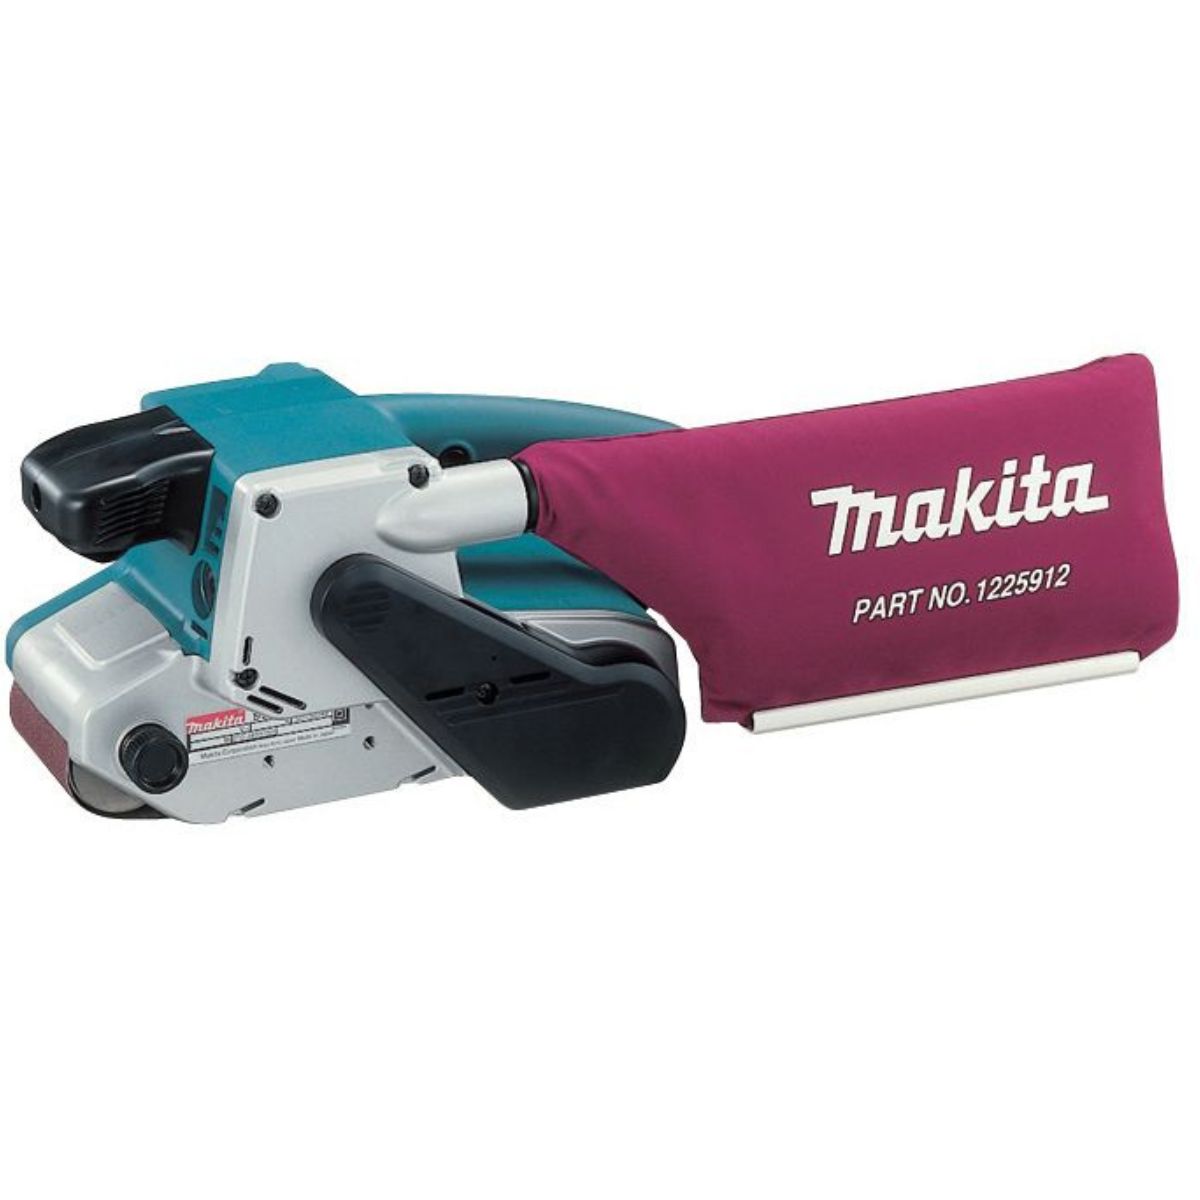 Makita 9903/2 76mm x 533mm Belt Sander 240V